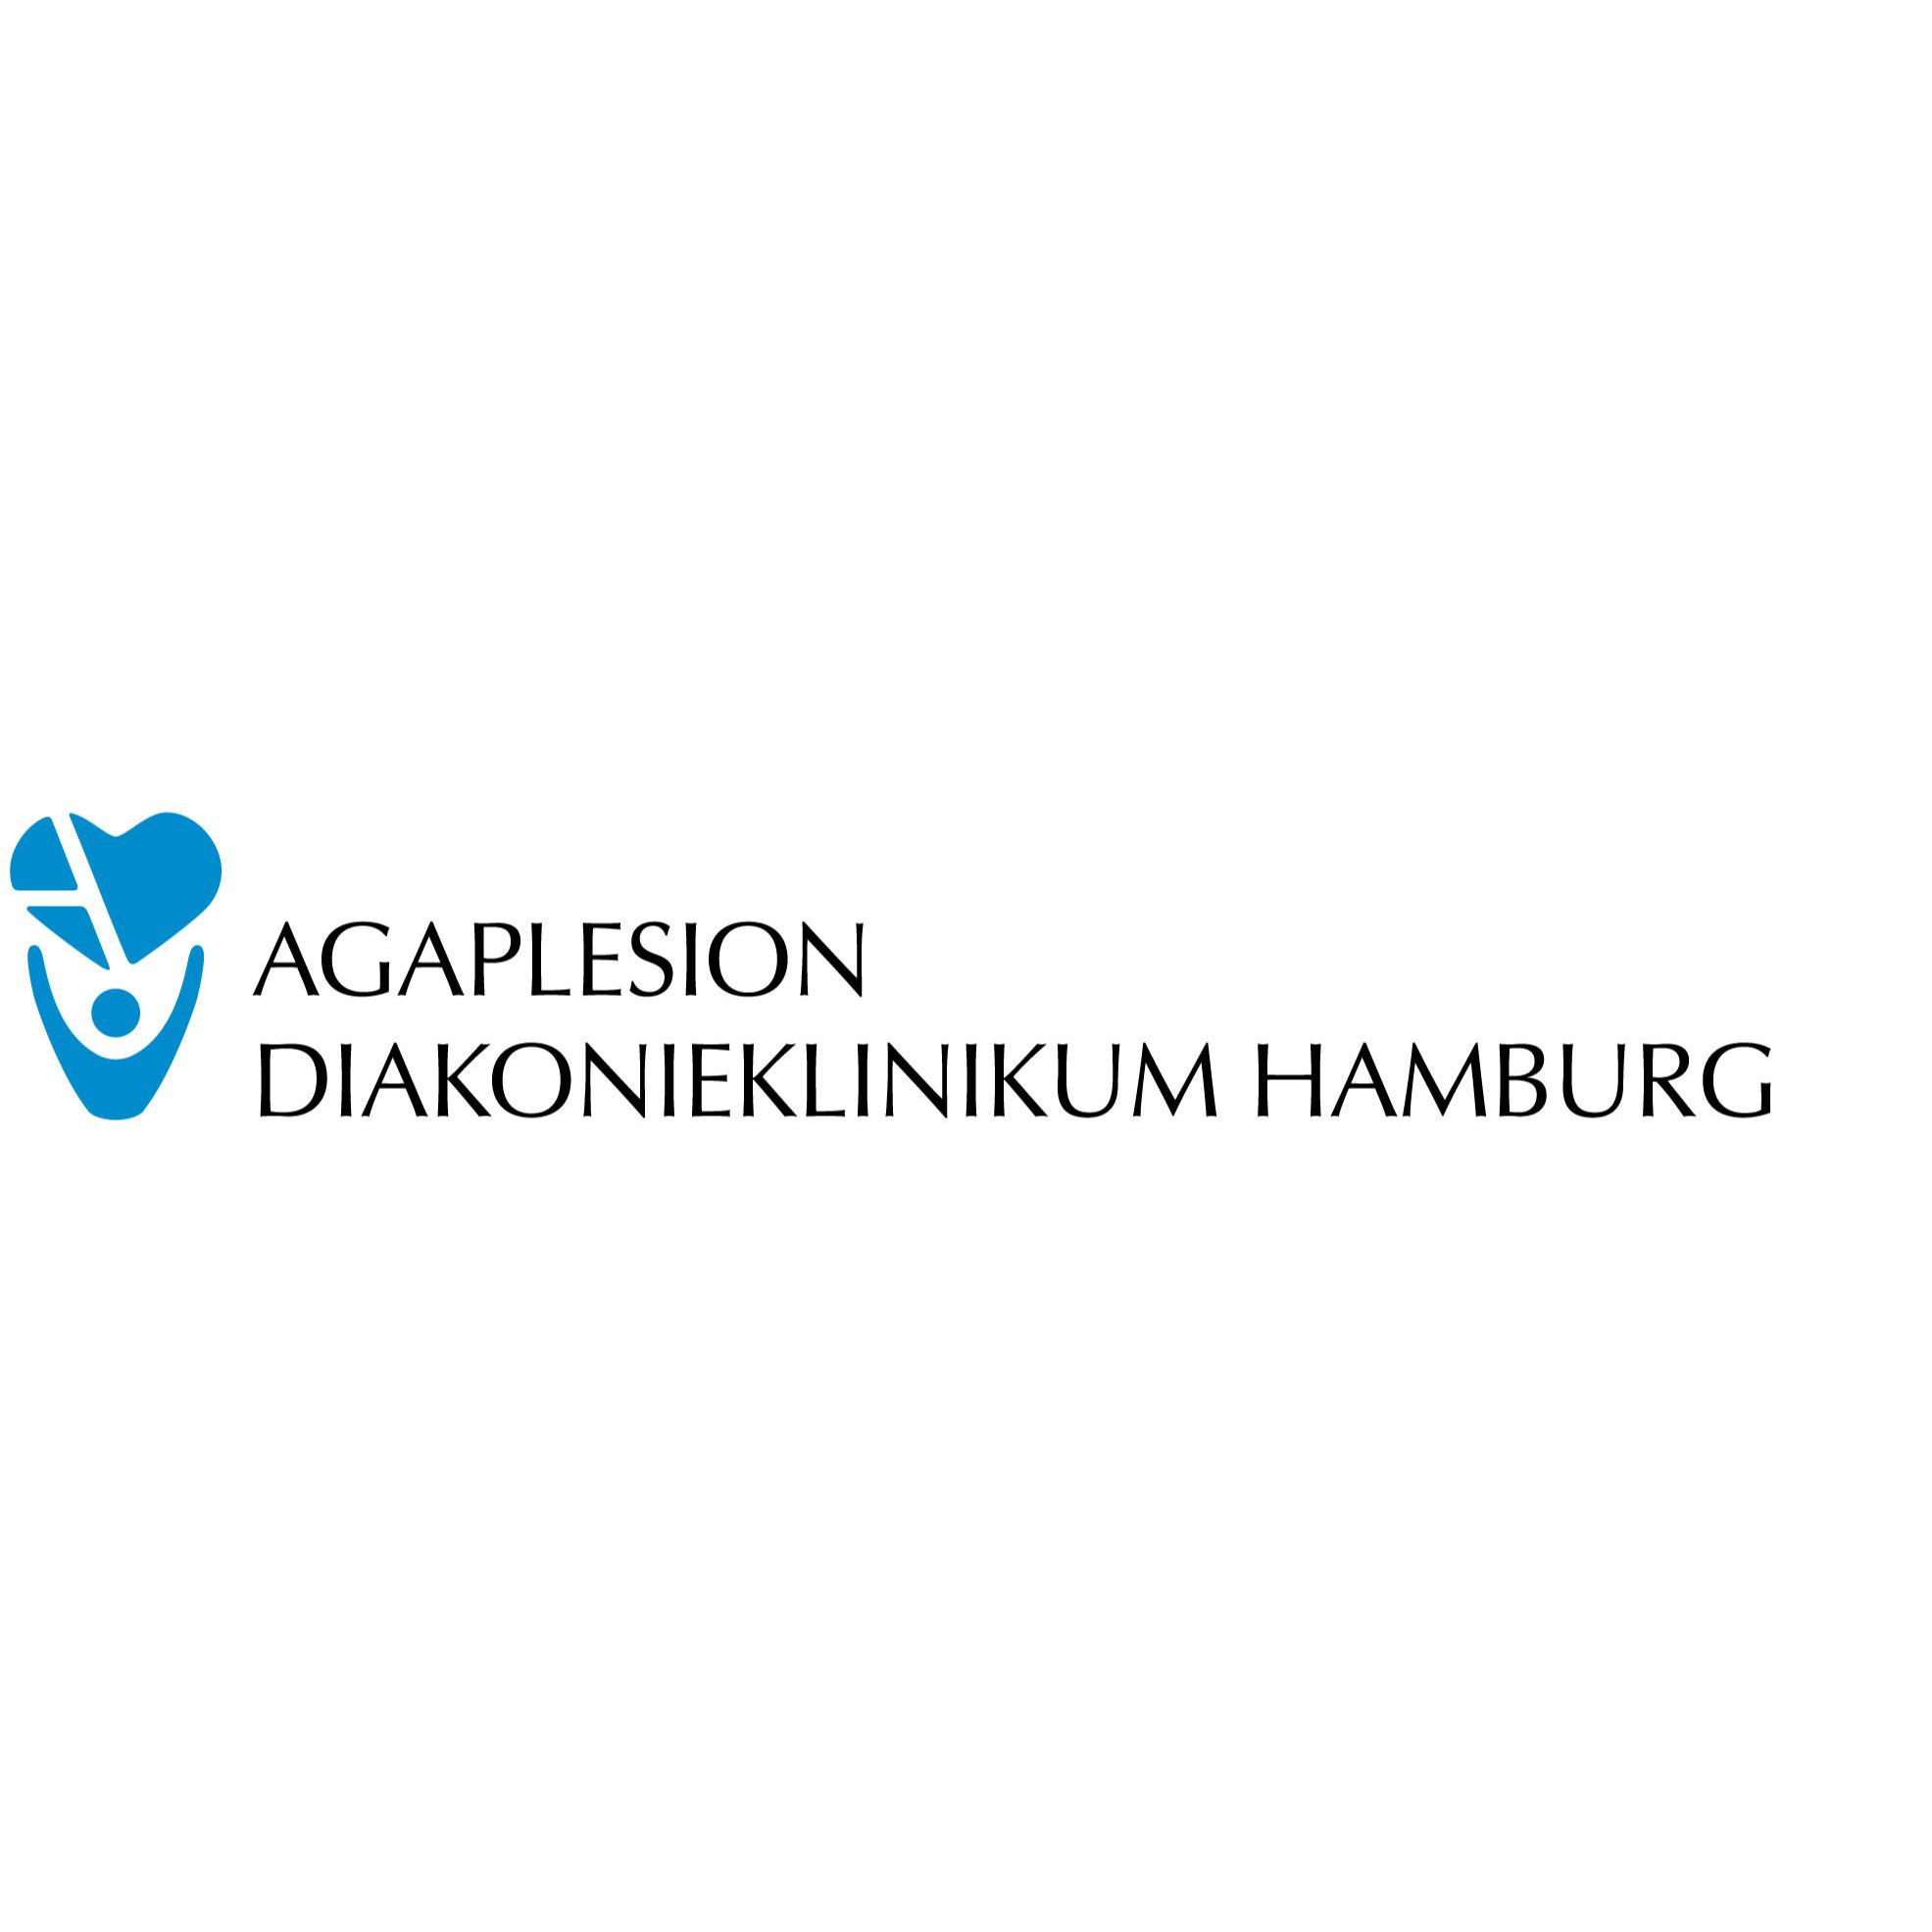 Klinik für Plastische, Rekonstruktive und Ästhetische Chirurgie am AGAPLESION DIAKONIEKLINIKUM HAMBURG in Hamburg - Logo